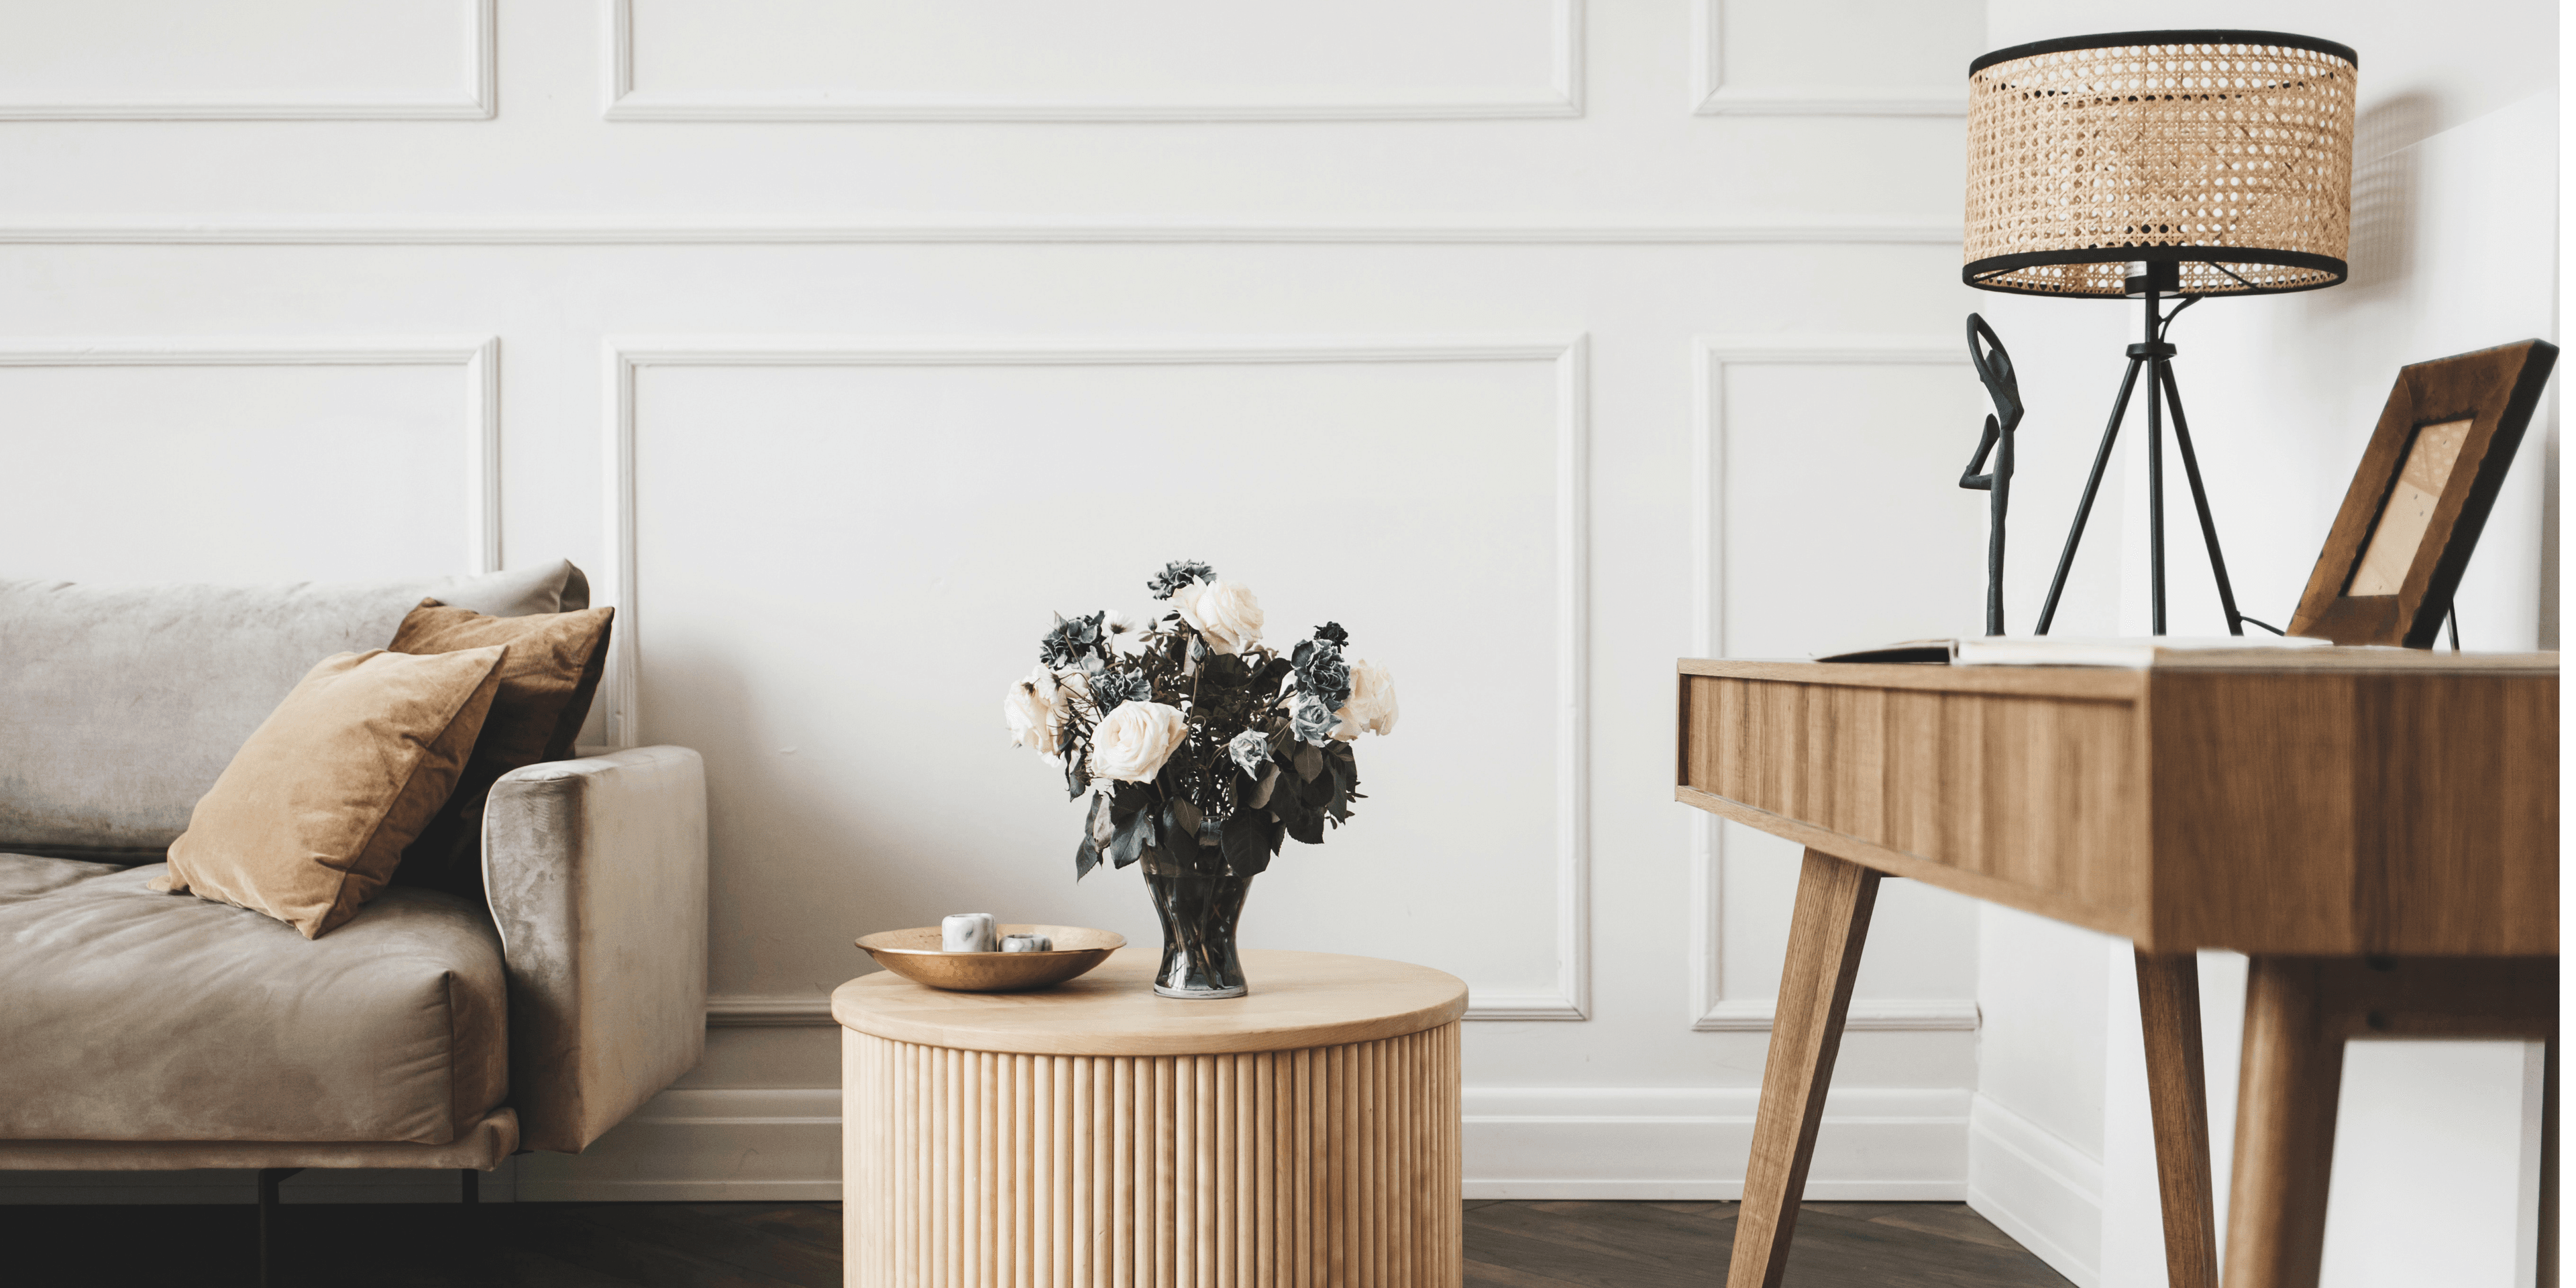 Olohuoneen nurkkaus, jossa on sohva, puinen sohvapöytä sekä sivupöytä. Huone on vaalea ja sisustuksessa on käytetty erisävyisiä puisia elementtejä. Sohvapöydällä on kukkakimppu.